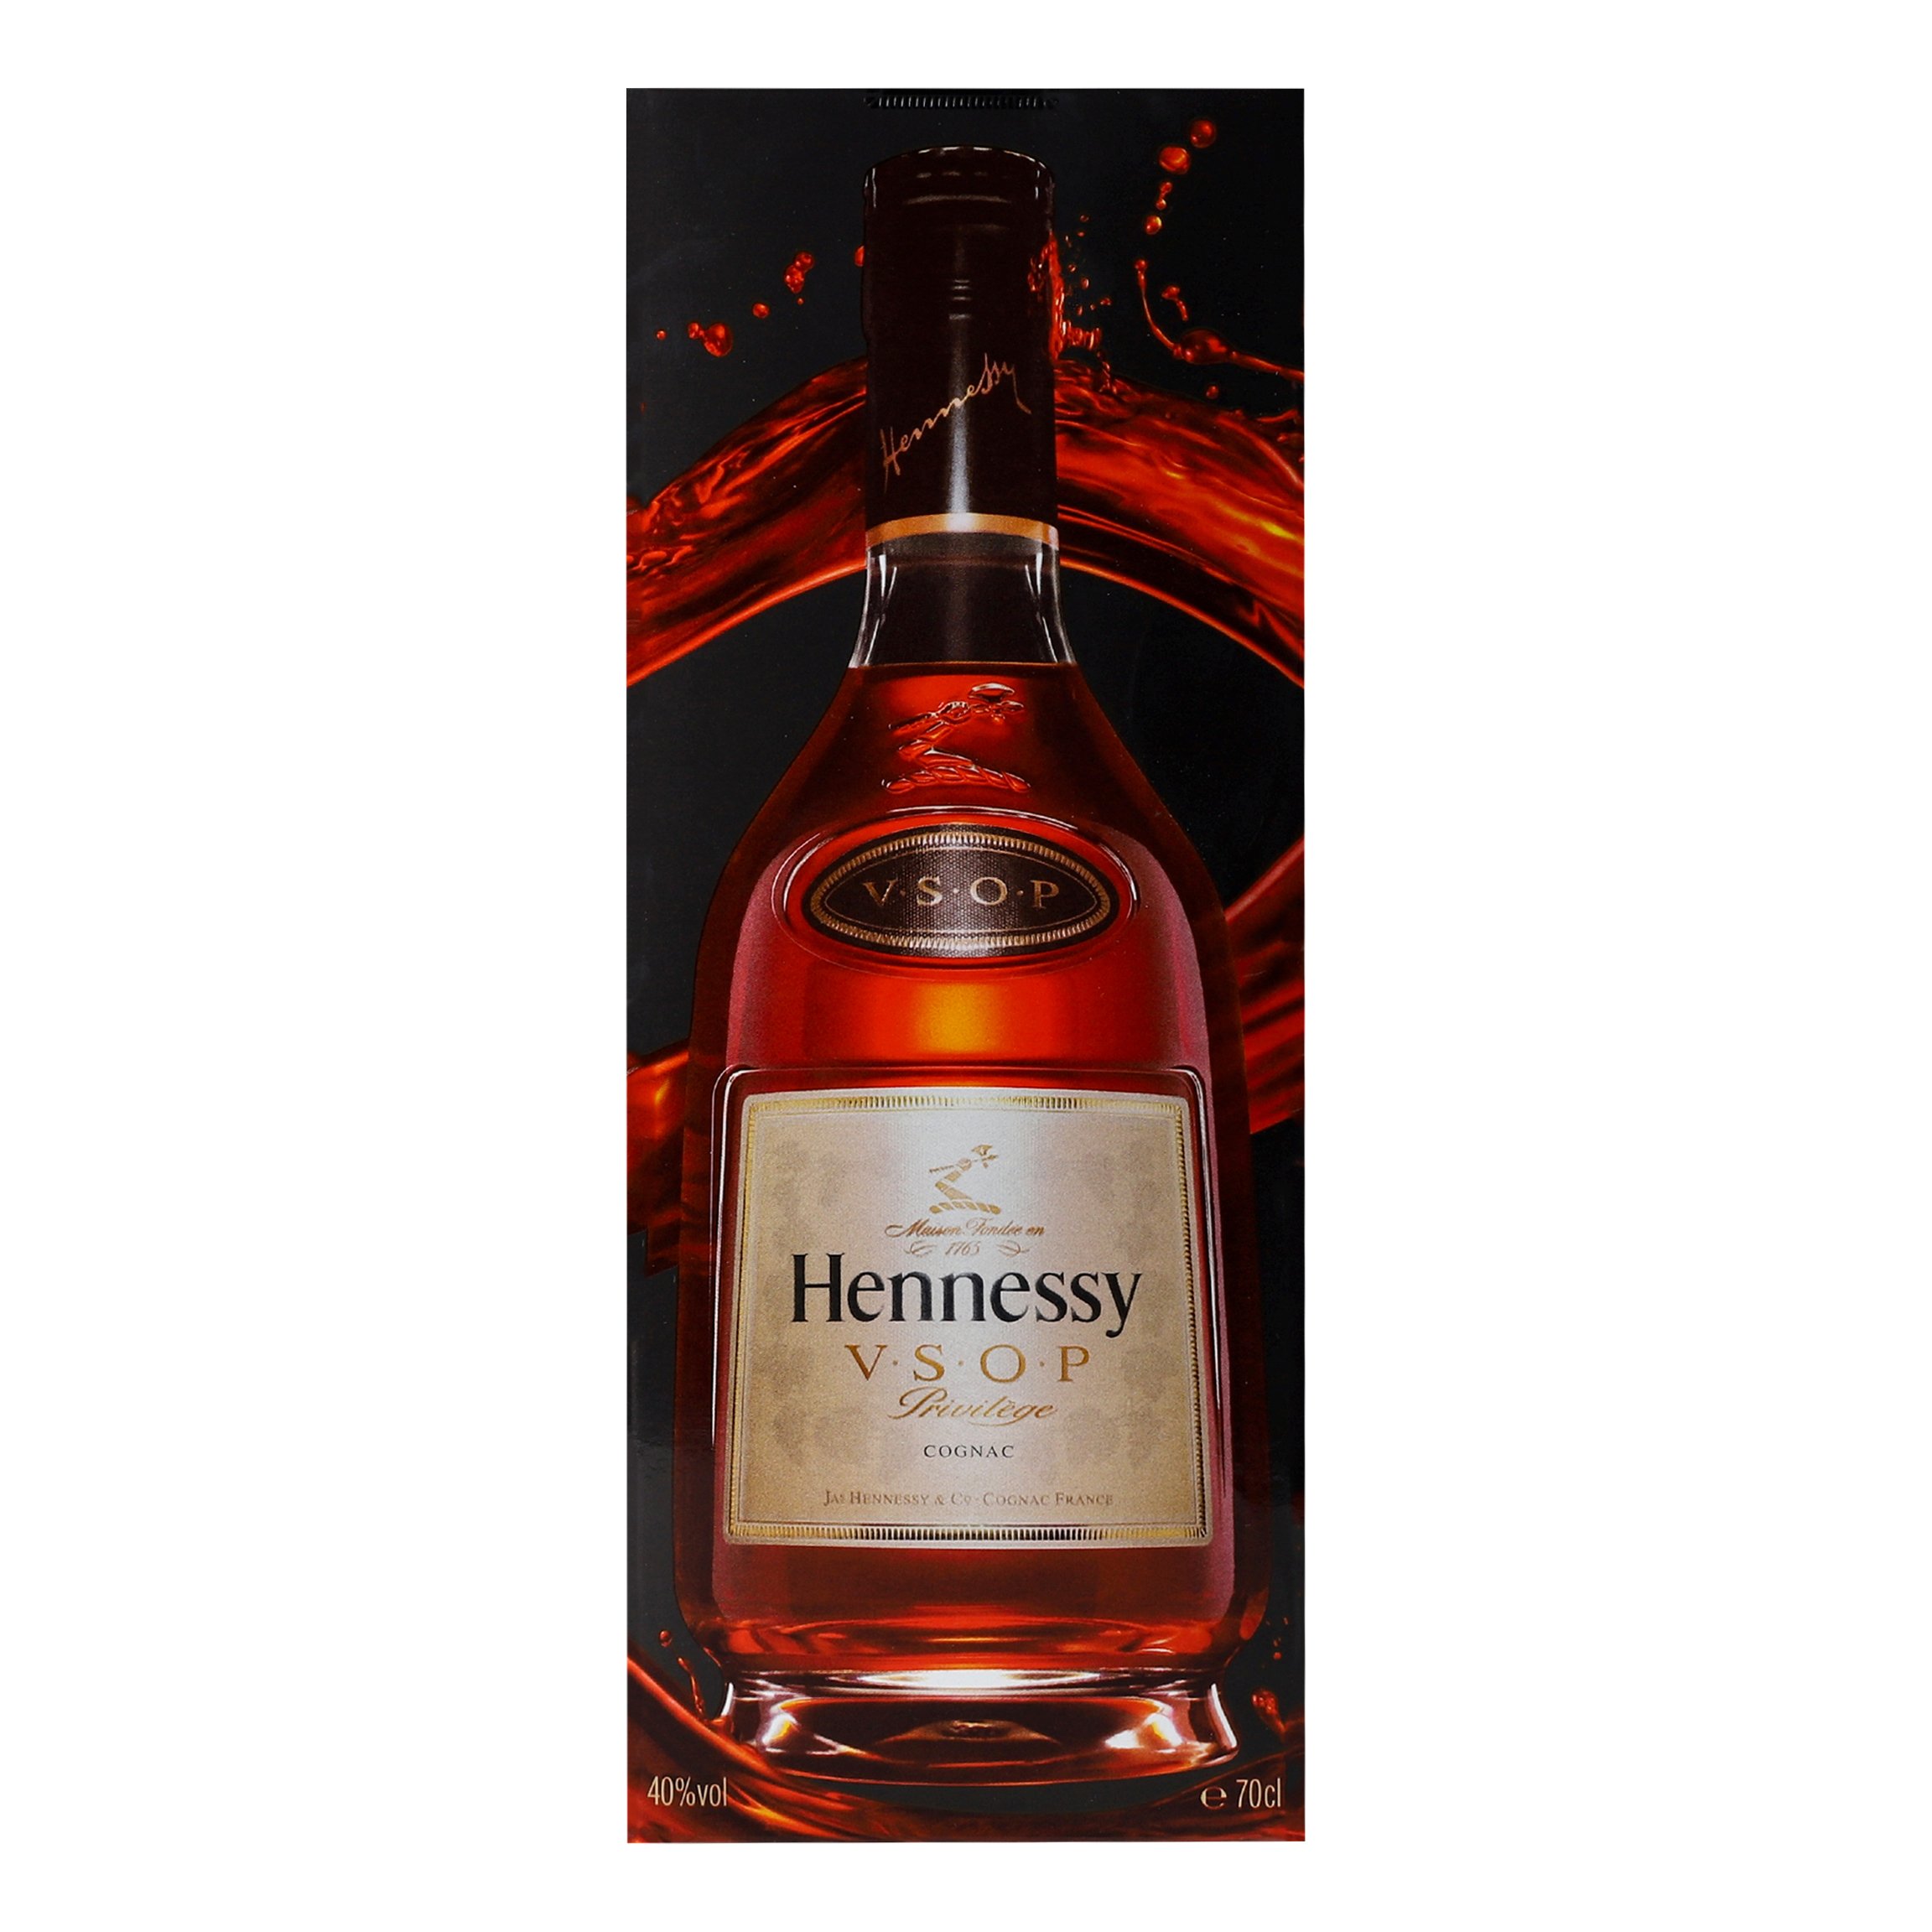 Коньяк Hennessy VSOP 6 лет выдержки, в подарочной упаковке, 40%, 0,7 л (10021) - фото 2